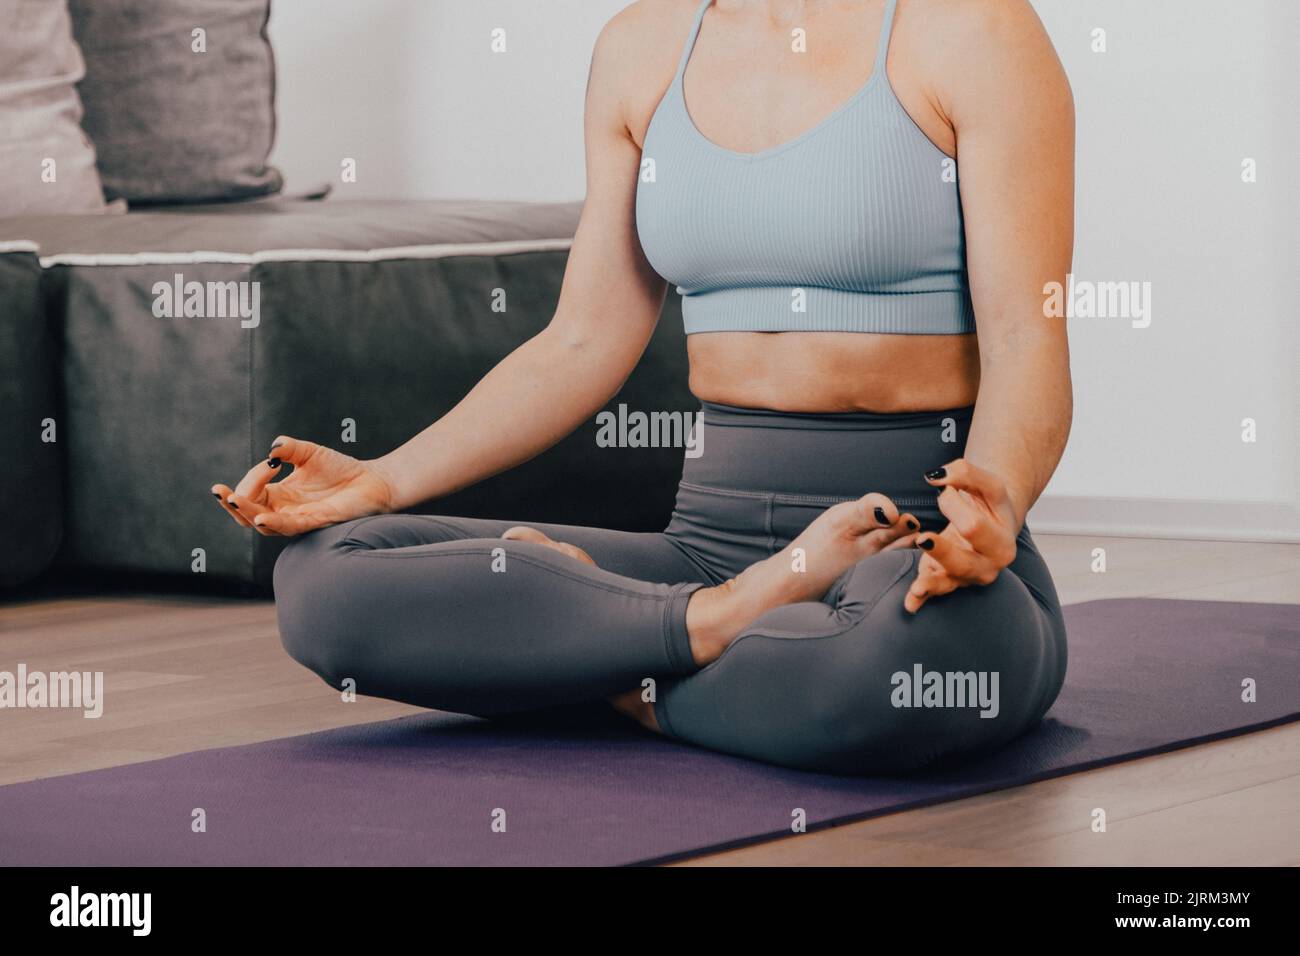 Nahaufnahme Hände einer Frau, die Yoga-Lotuspose macht und in ihrem Zuhause im Wohnzimmer meditiert - Körper beruhigen Lebensstress Entspannen Sie sich in einer Lotuspose Stockfoto